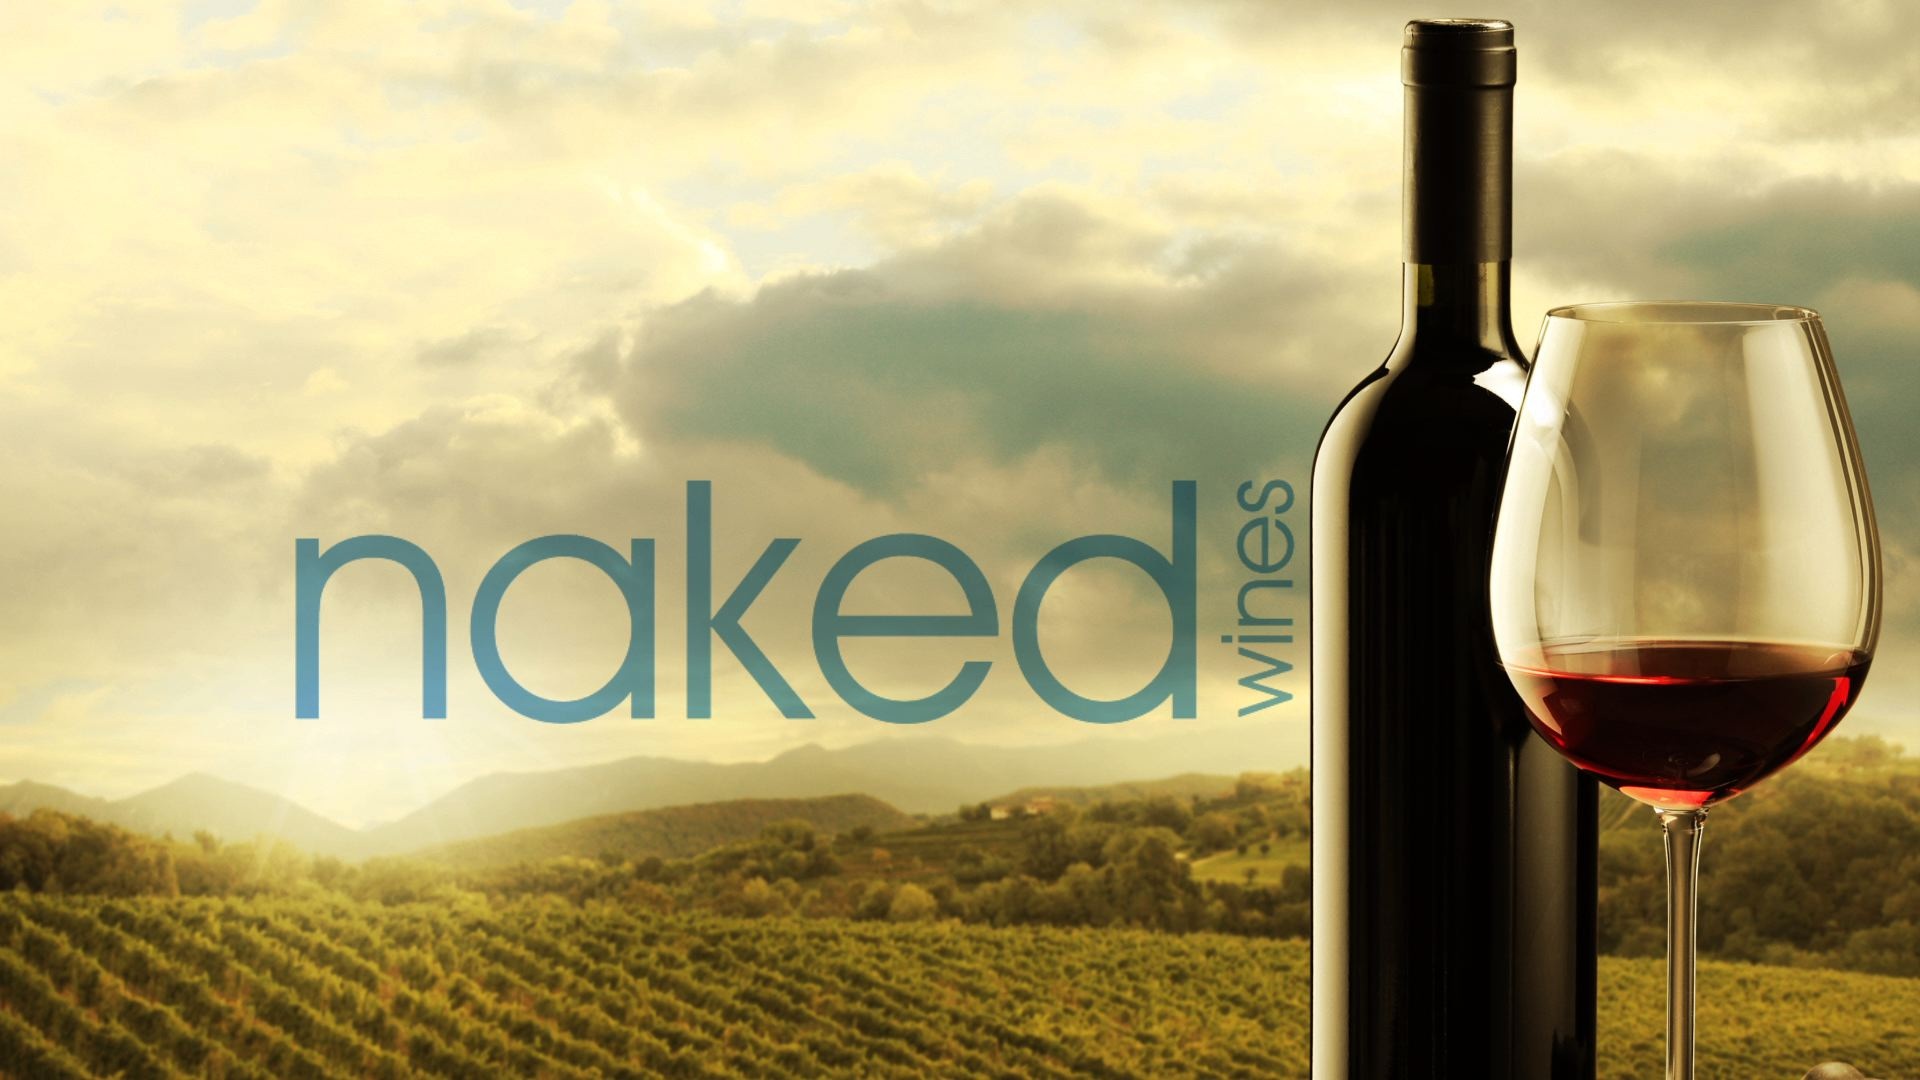 Naked wine branding banner image